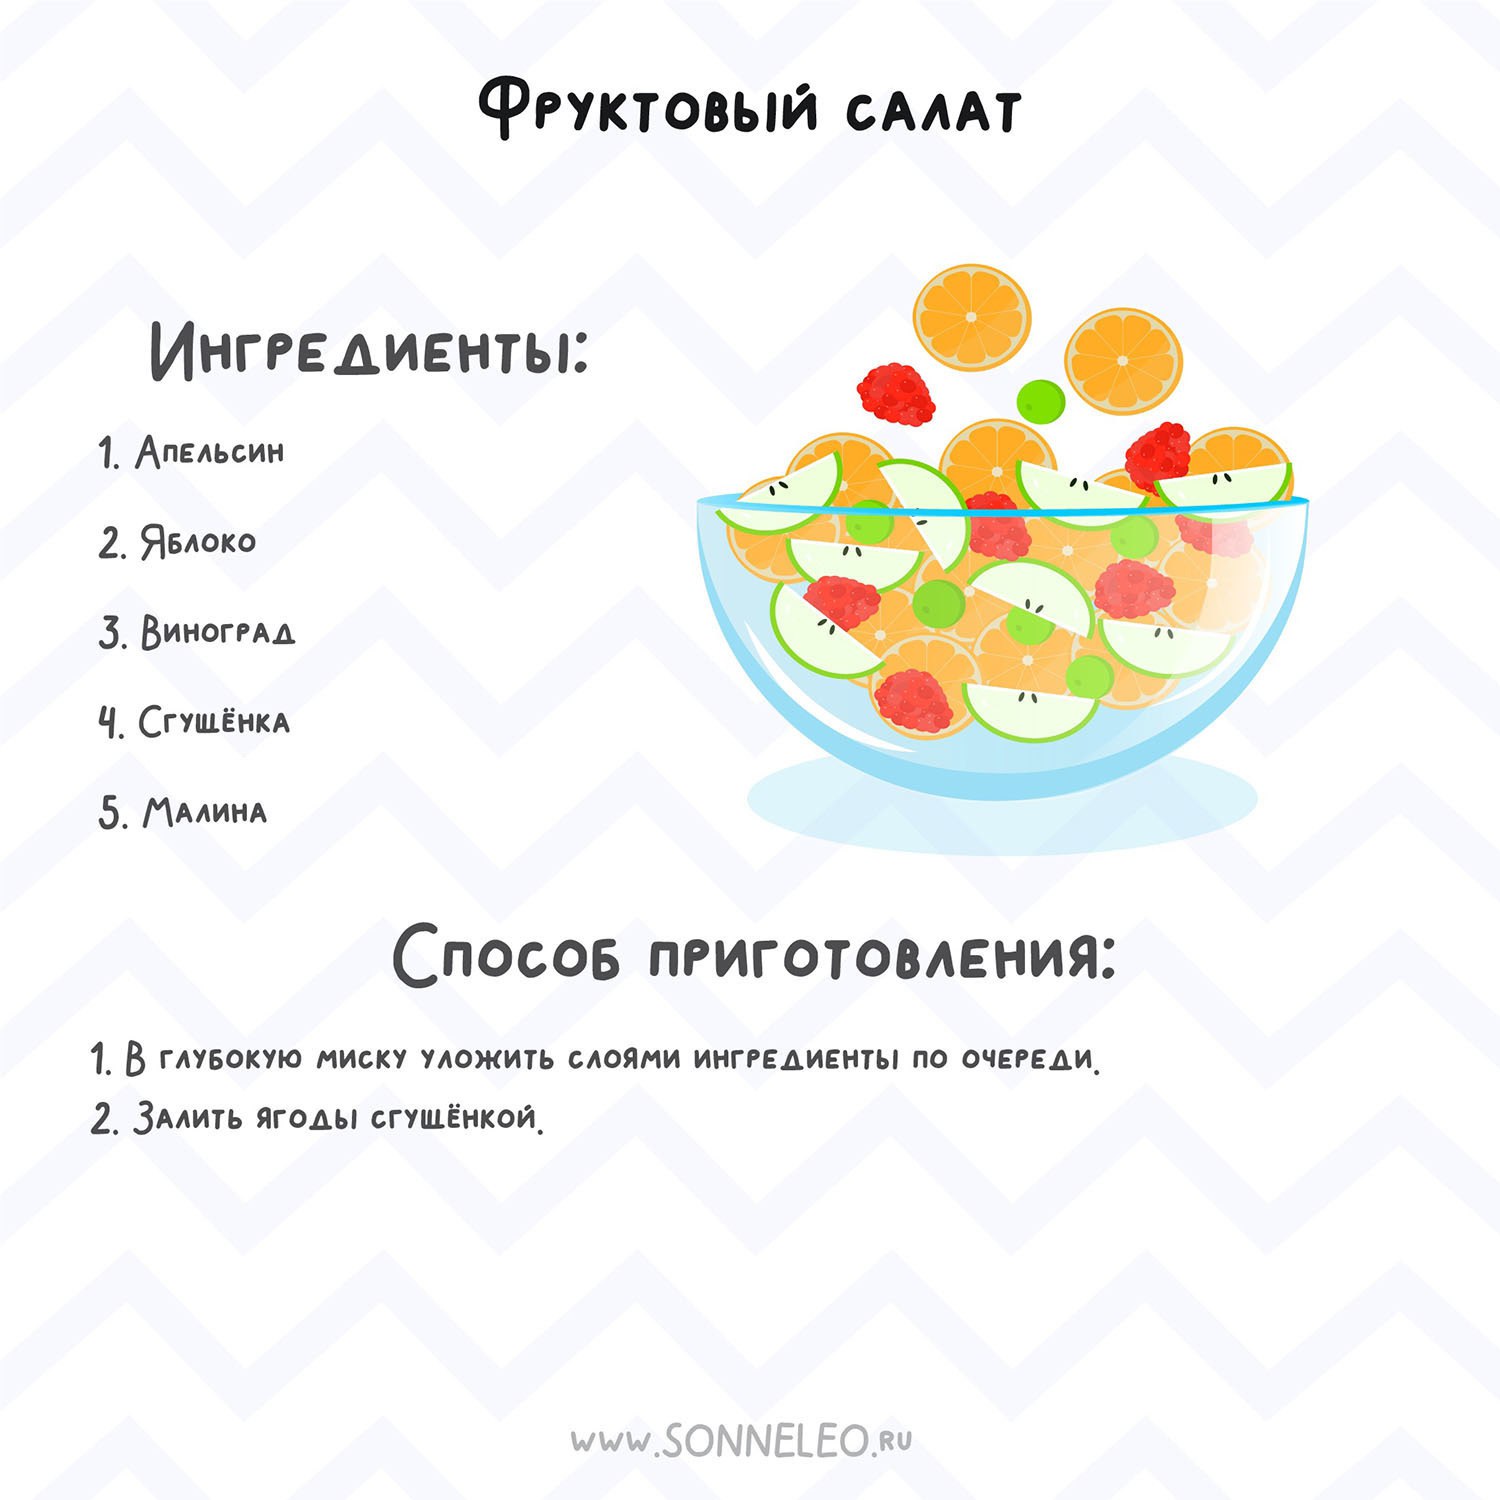 Телеграмм меню на русском языке фото 103